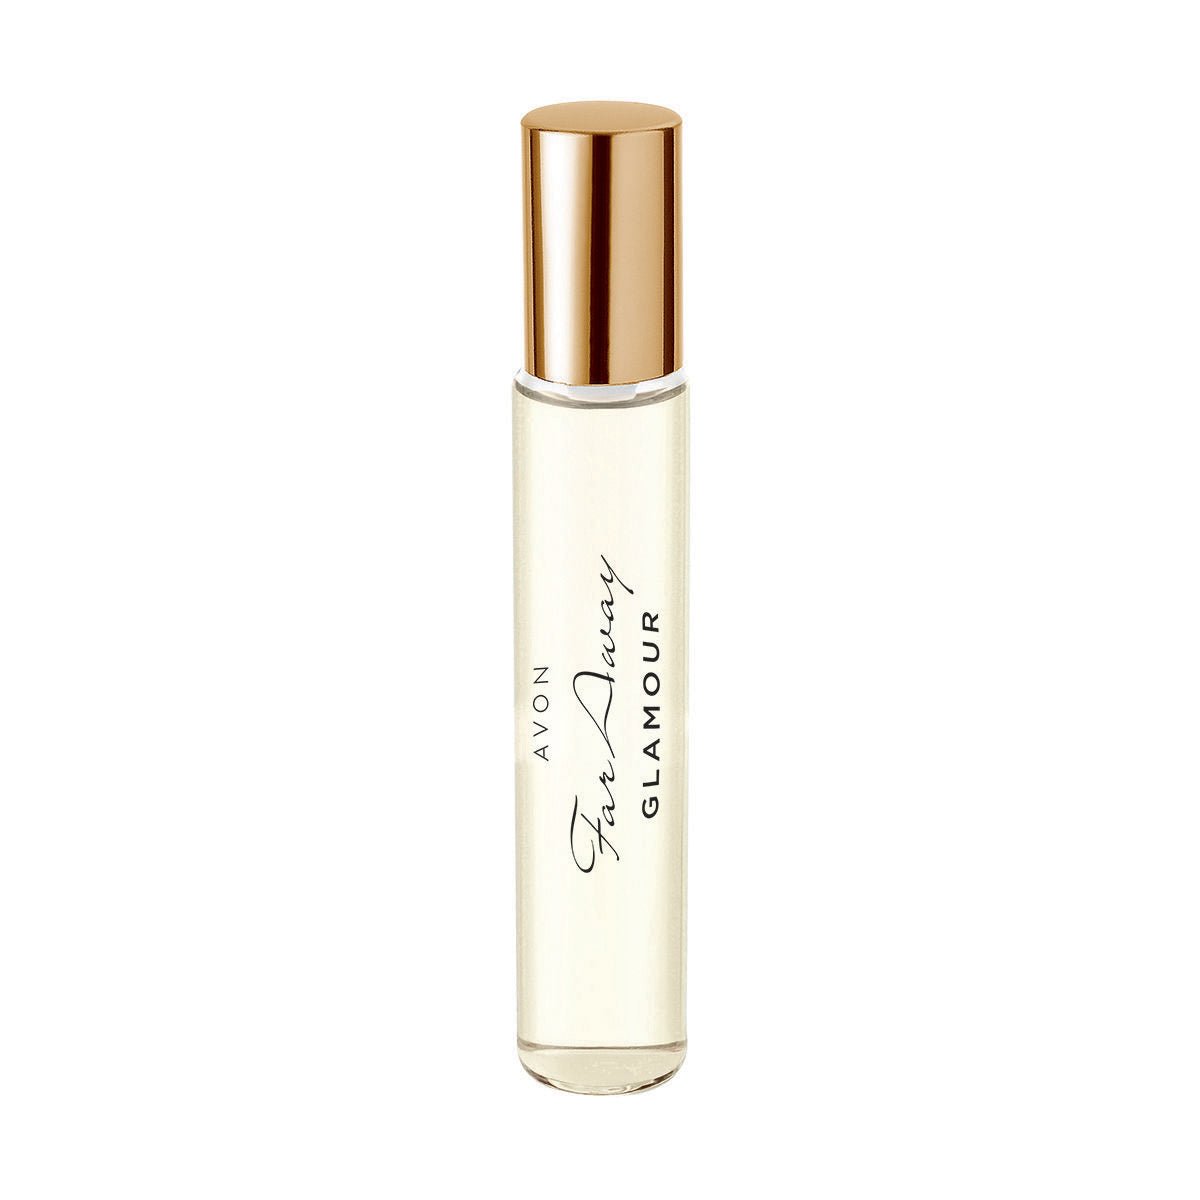 Avon Far Away Glamour Eau de Parfum Purse Spray - 10ml